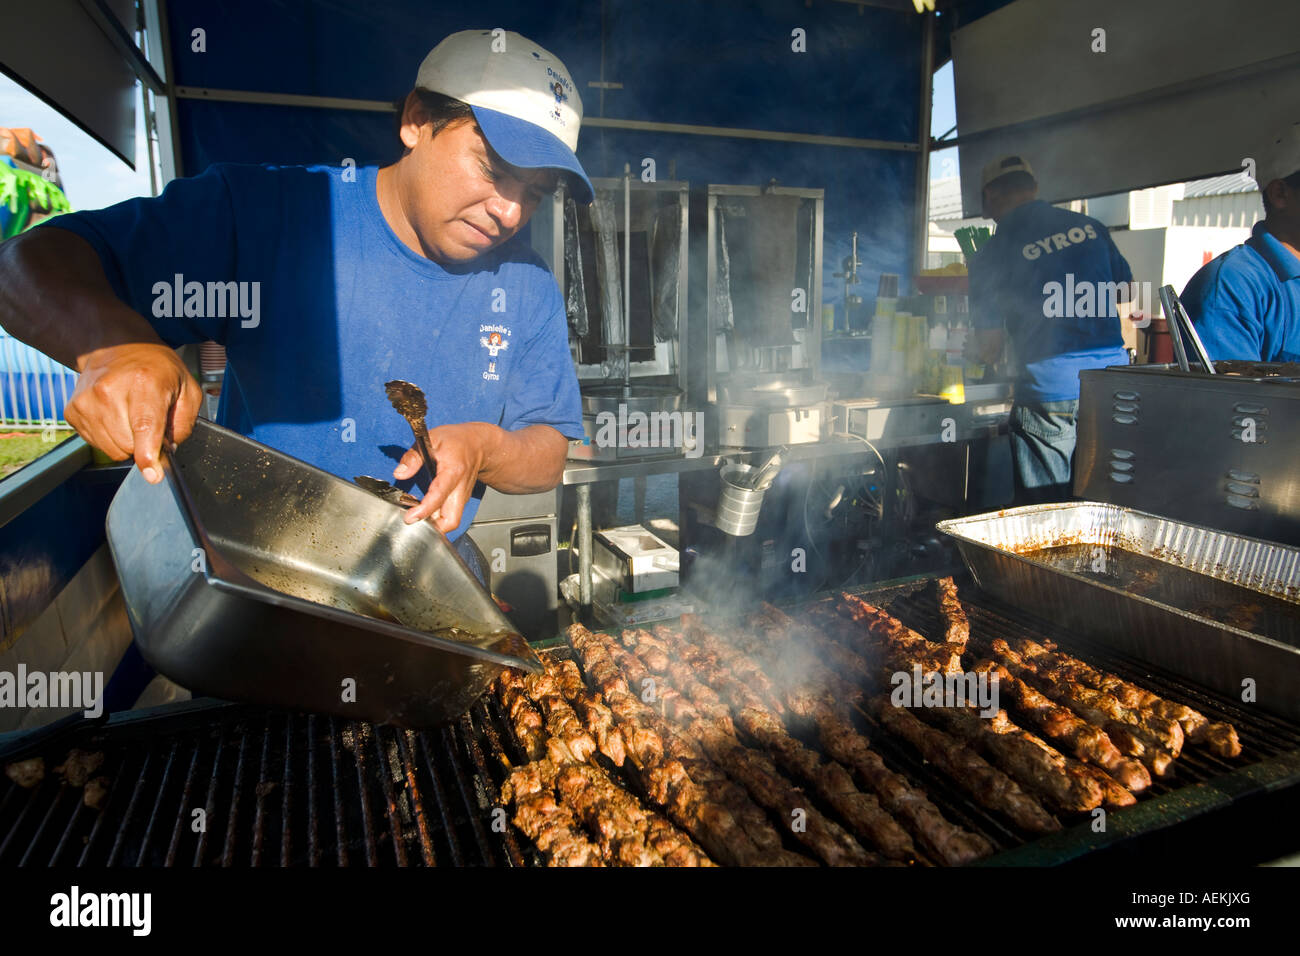 ILLINOIS Grayslake schnell Essen stand am Lake County Fair Mann arbeitet  Gießen Sauce auf Spieße am Grill Dampf Aufstieg Stockfotografie - Alamy